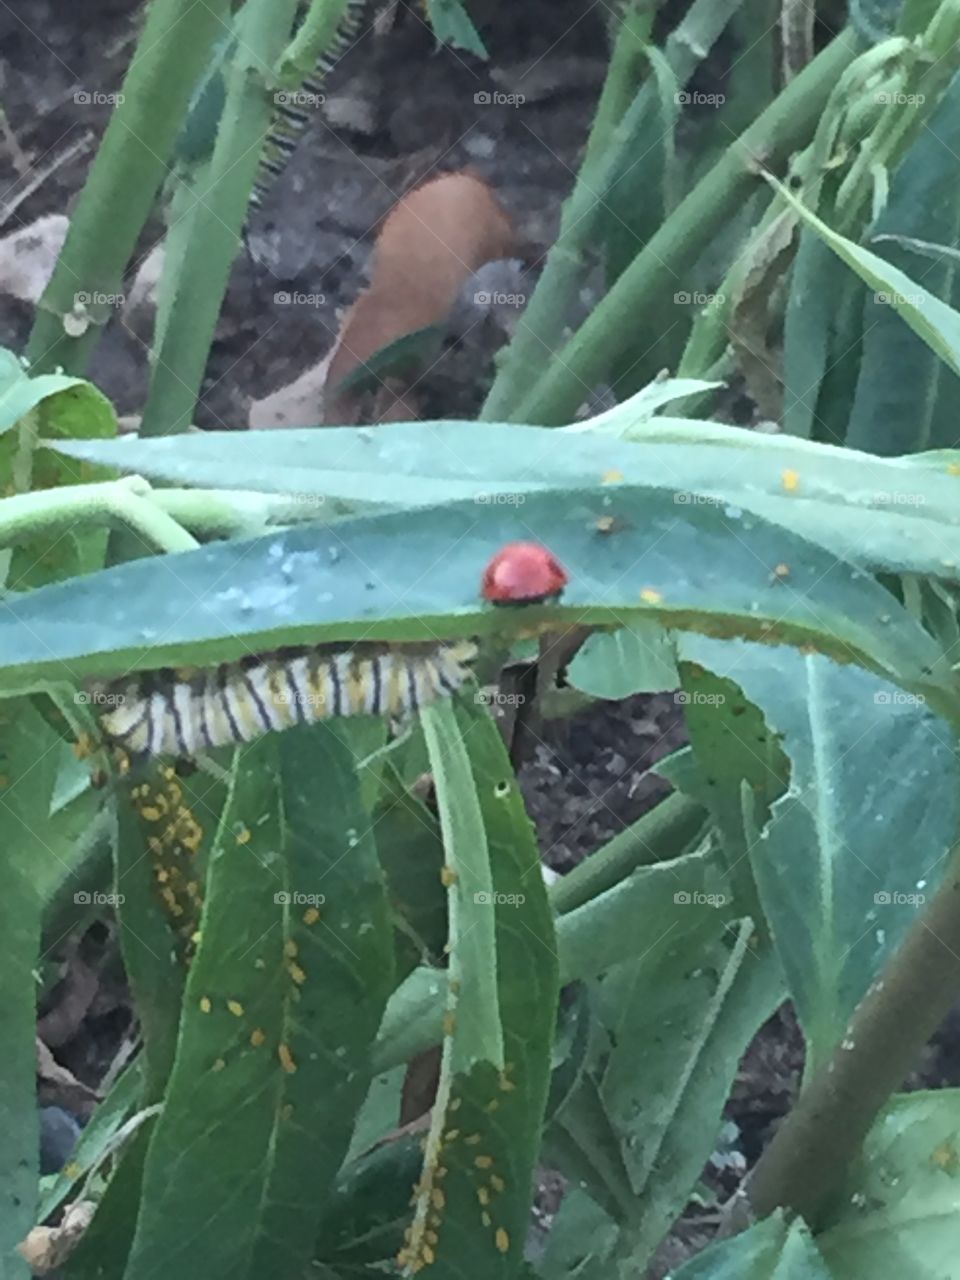 Ladybug and caterpillar 